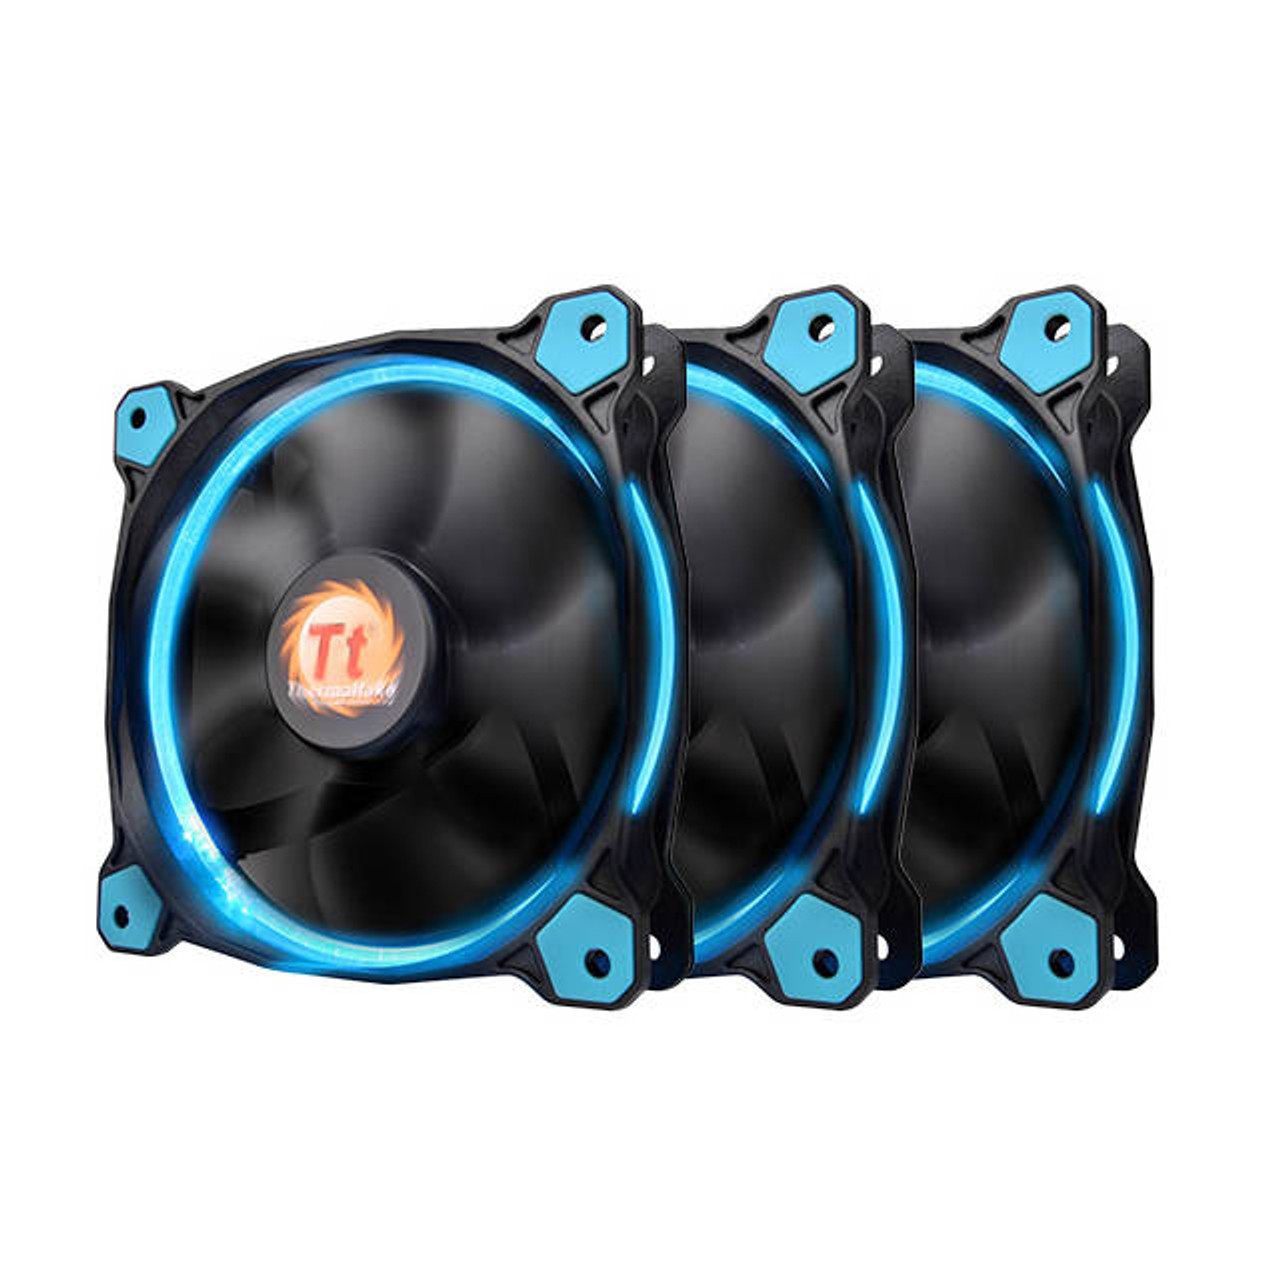 Thermaltake Riing 120mm Blue LED Case Fan (3 fan pack)